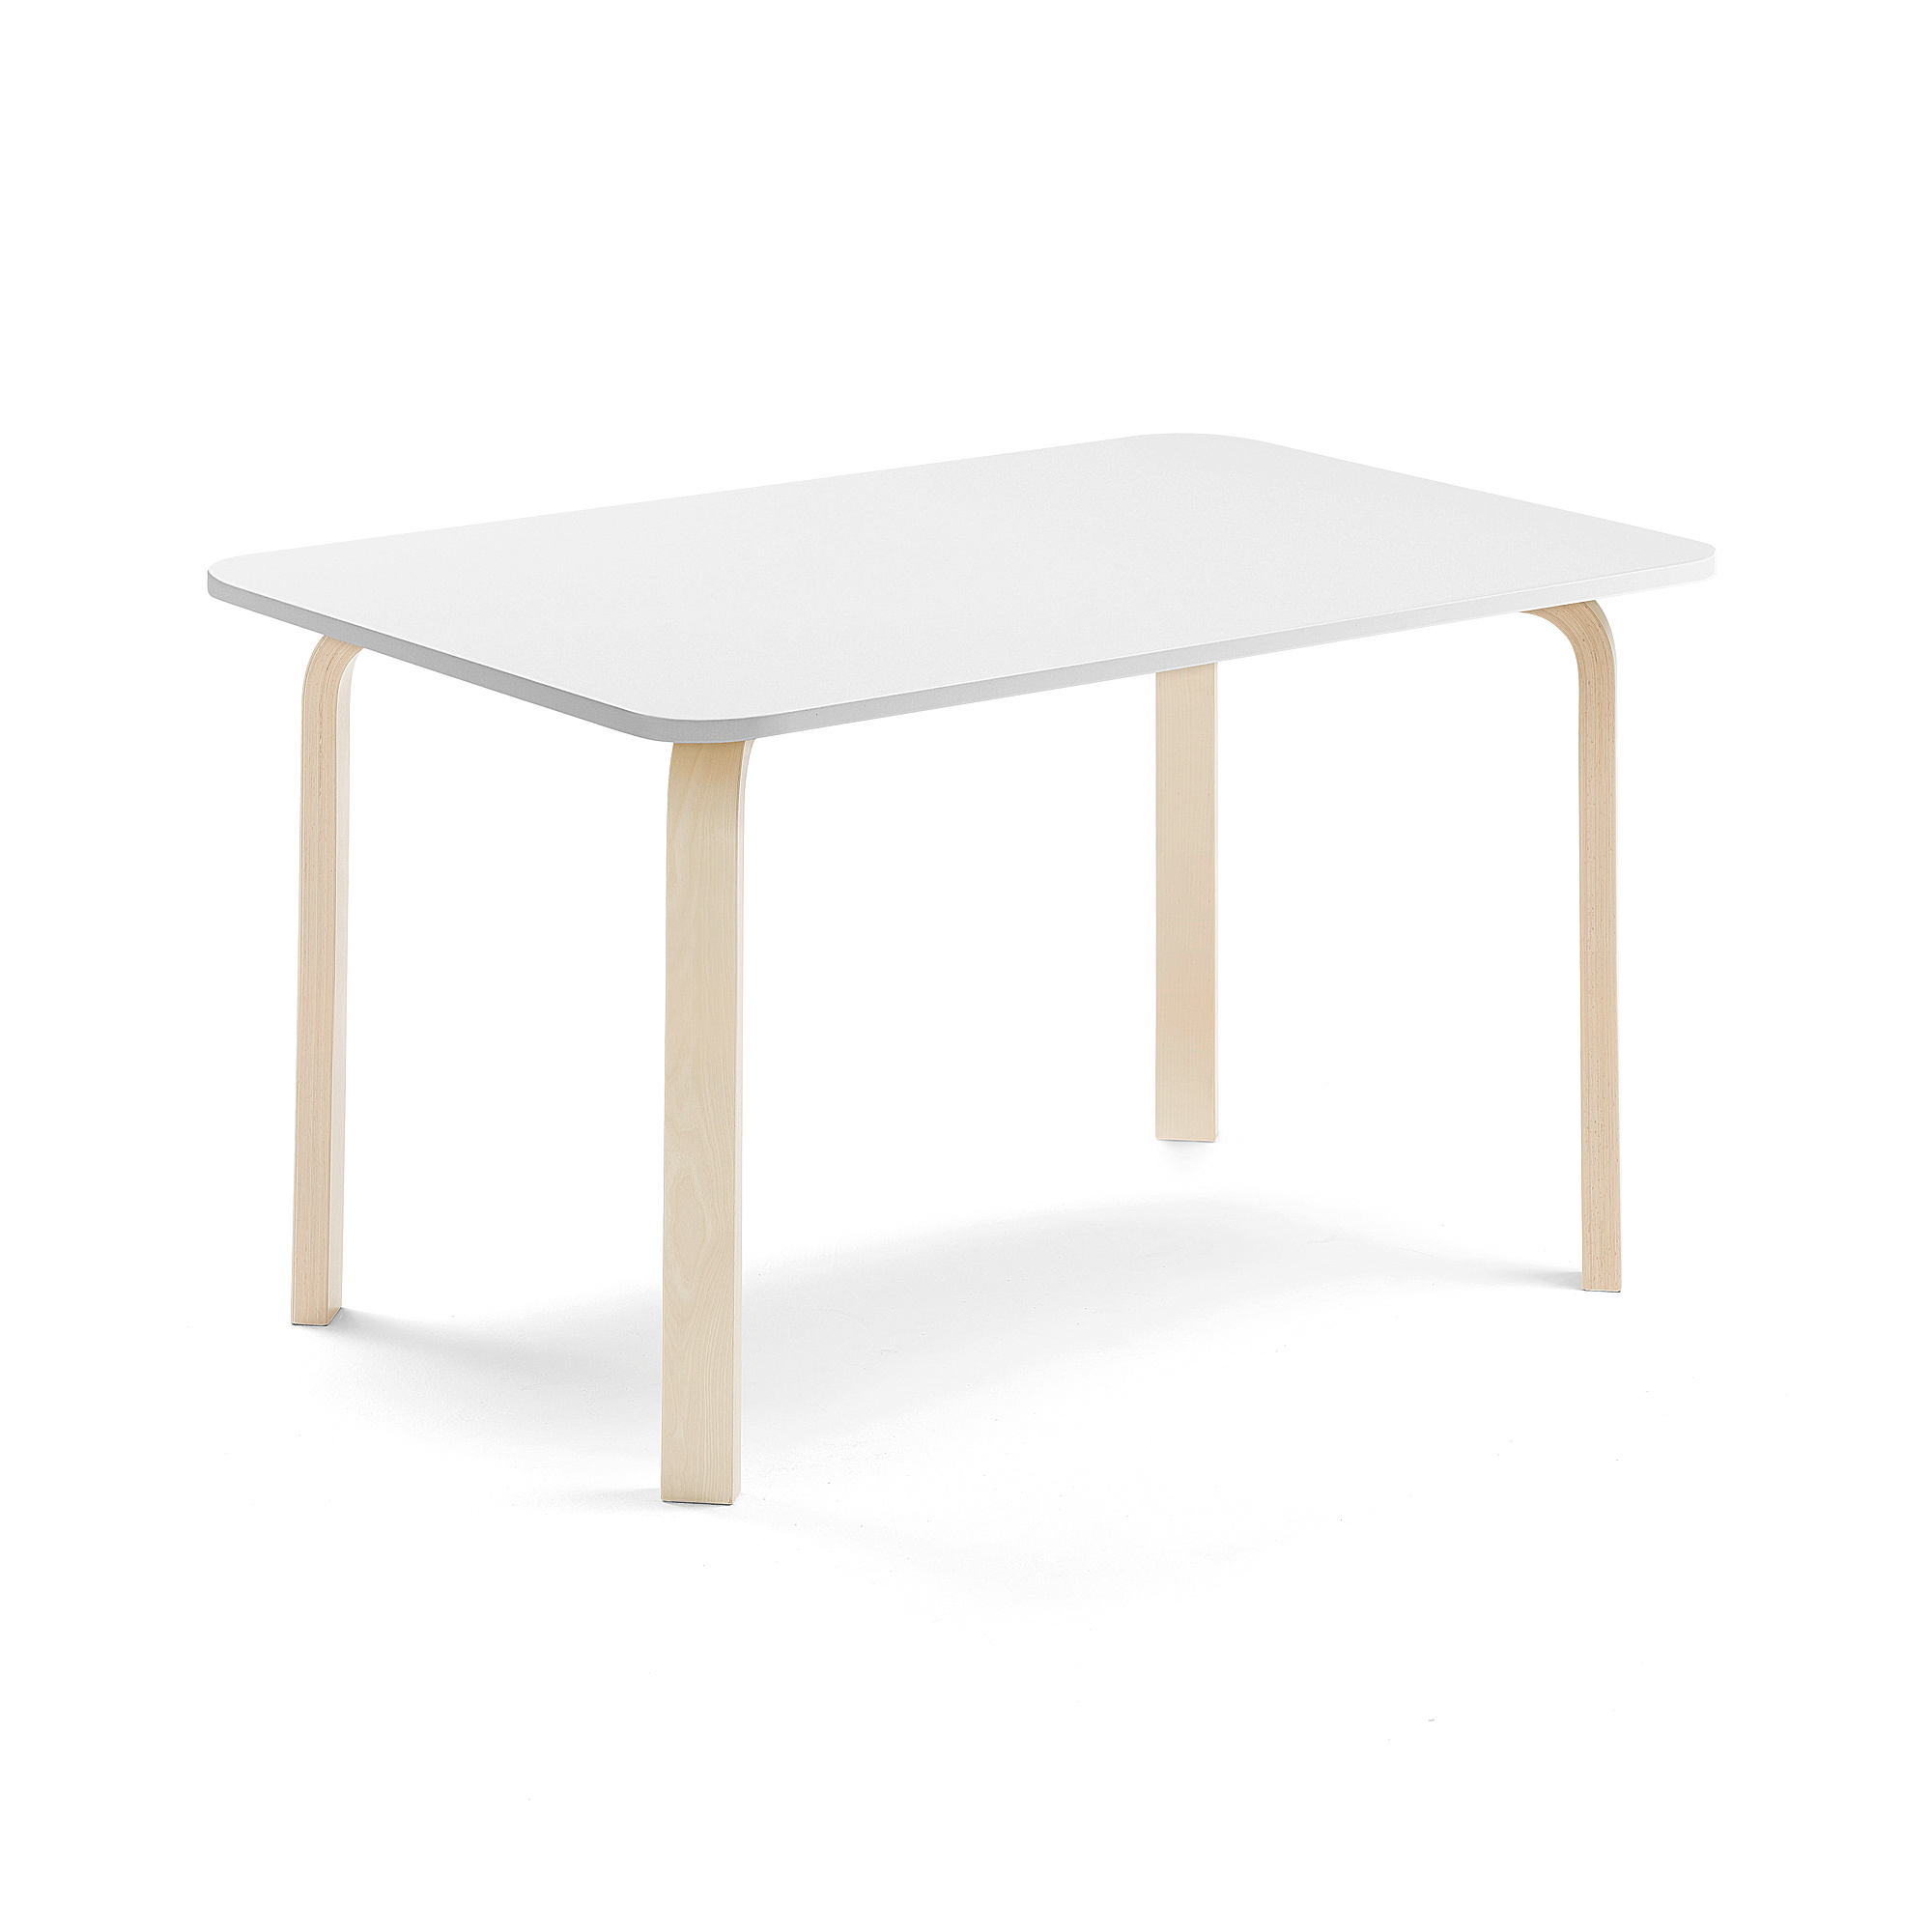 Stůl ELTON, 1200x600x640 mm, bříza, akustická HPL deska, bílá